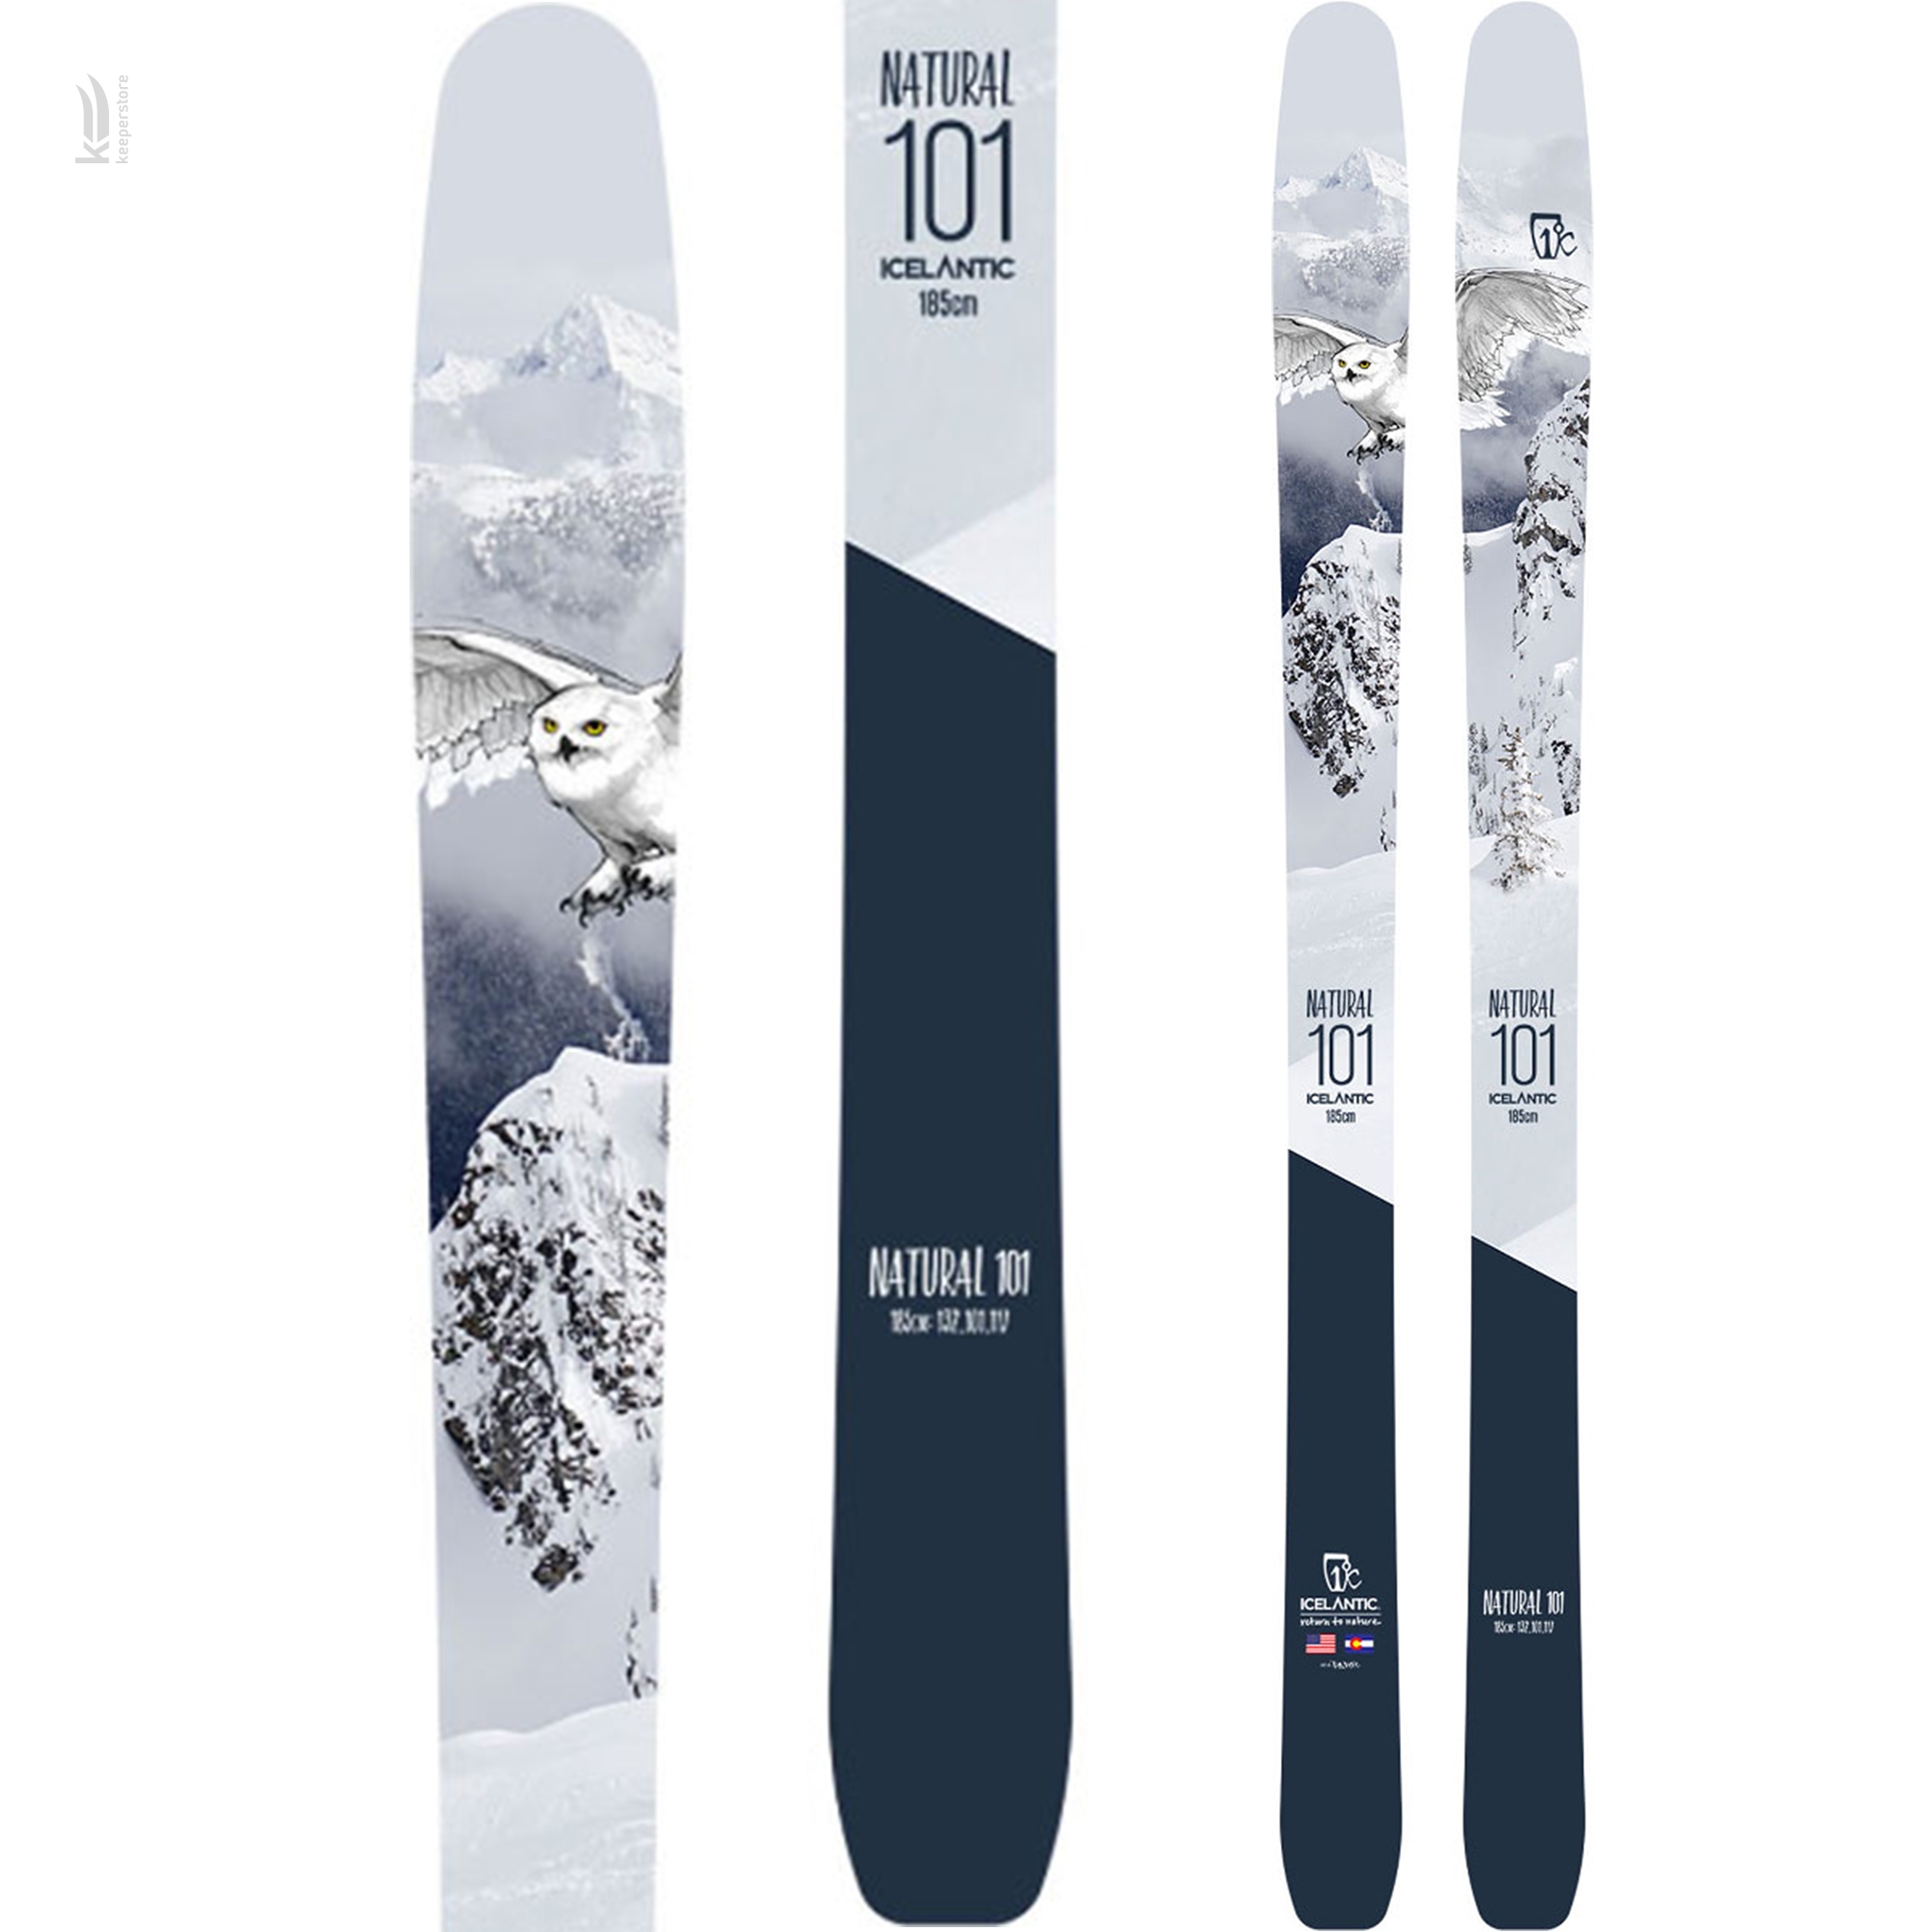 Направленные лыжи Icelantic Natural 101 2018/2019 185cm